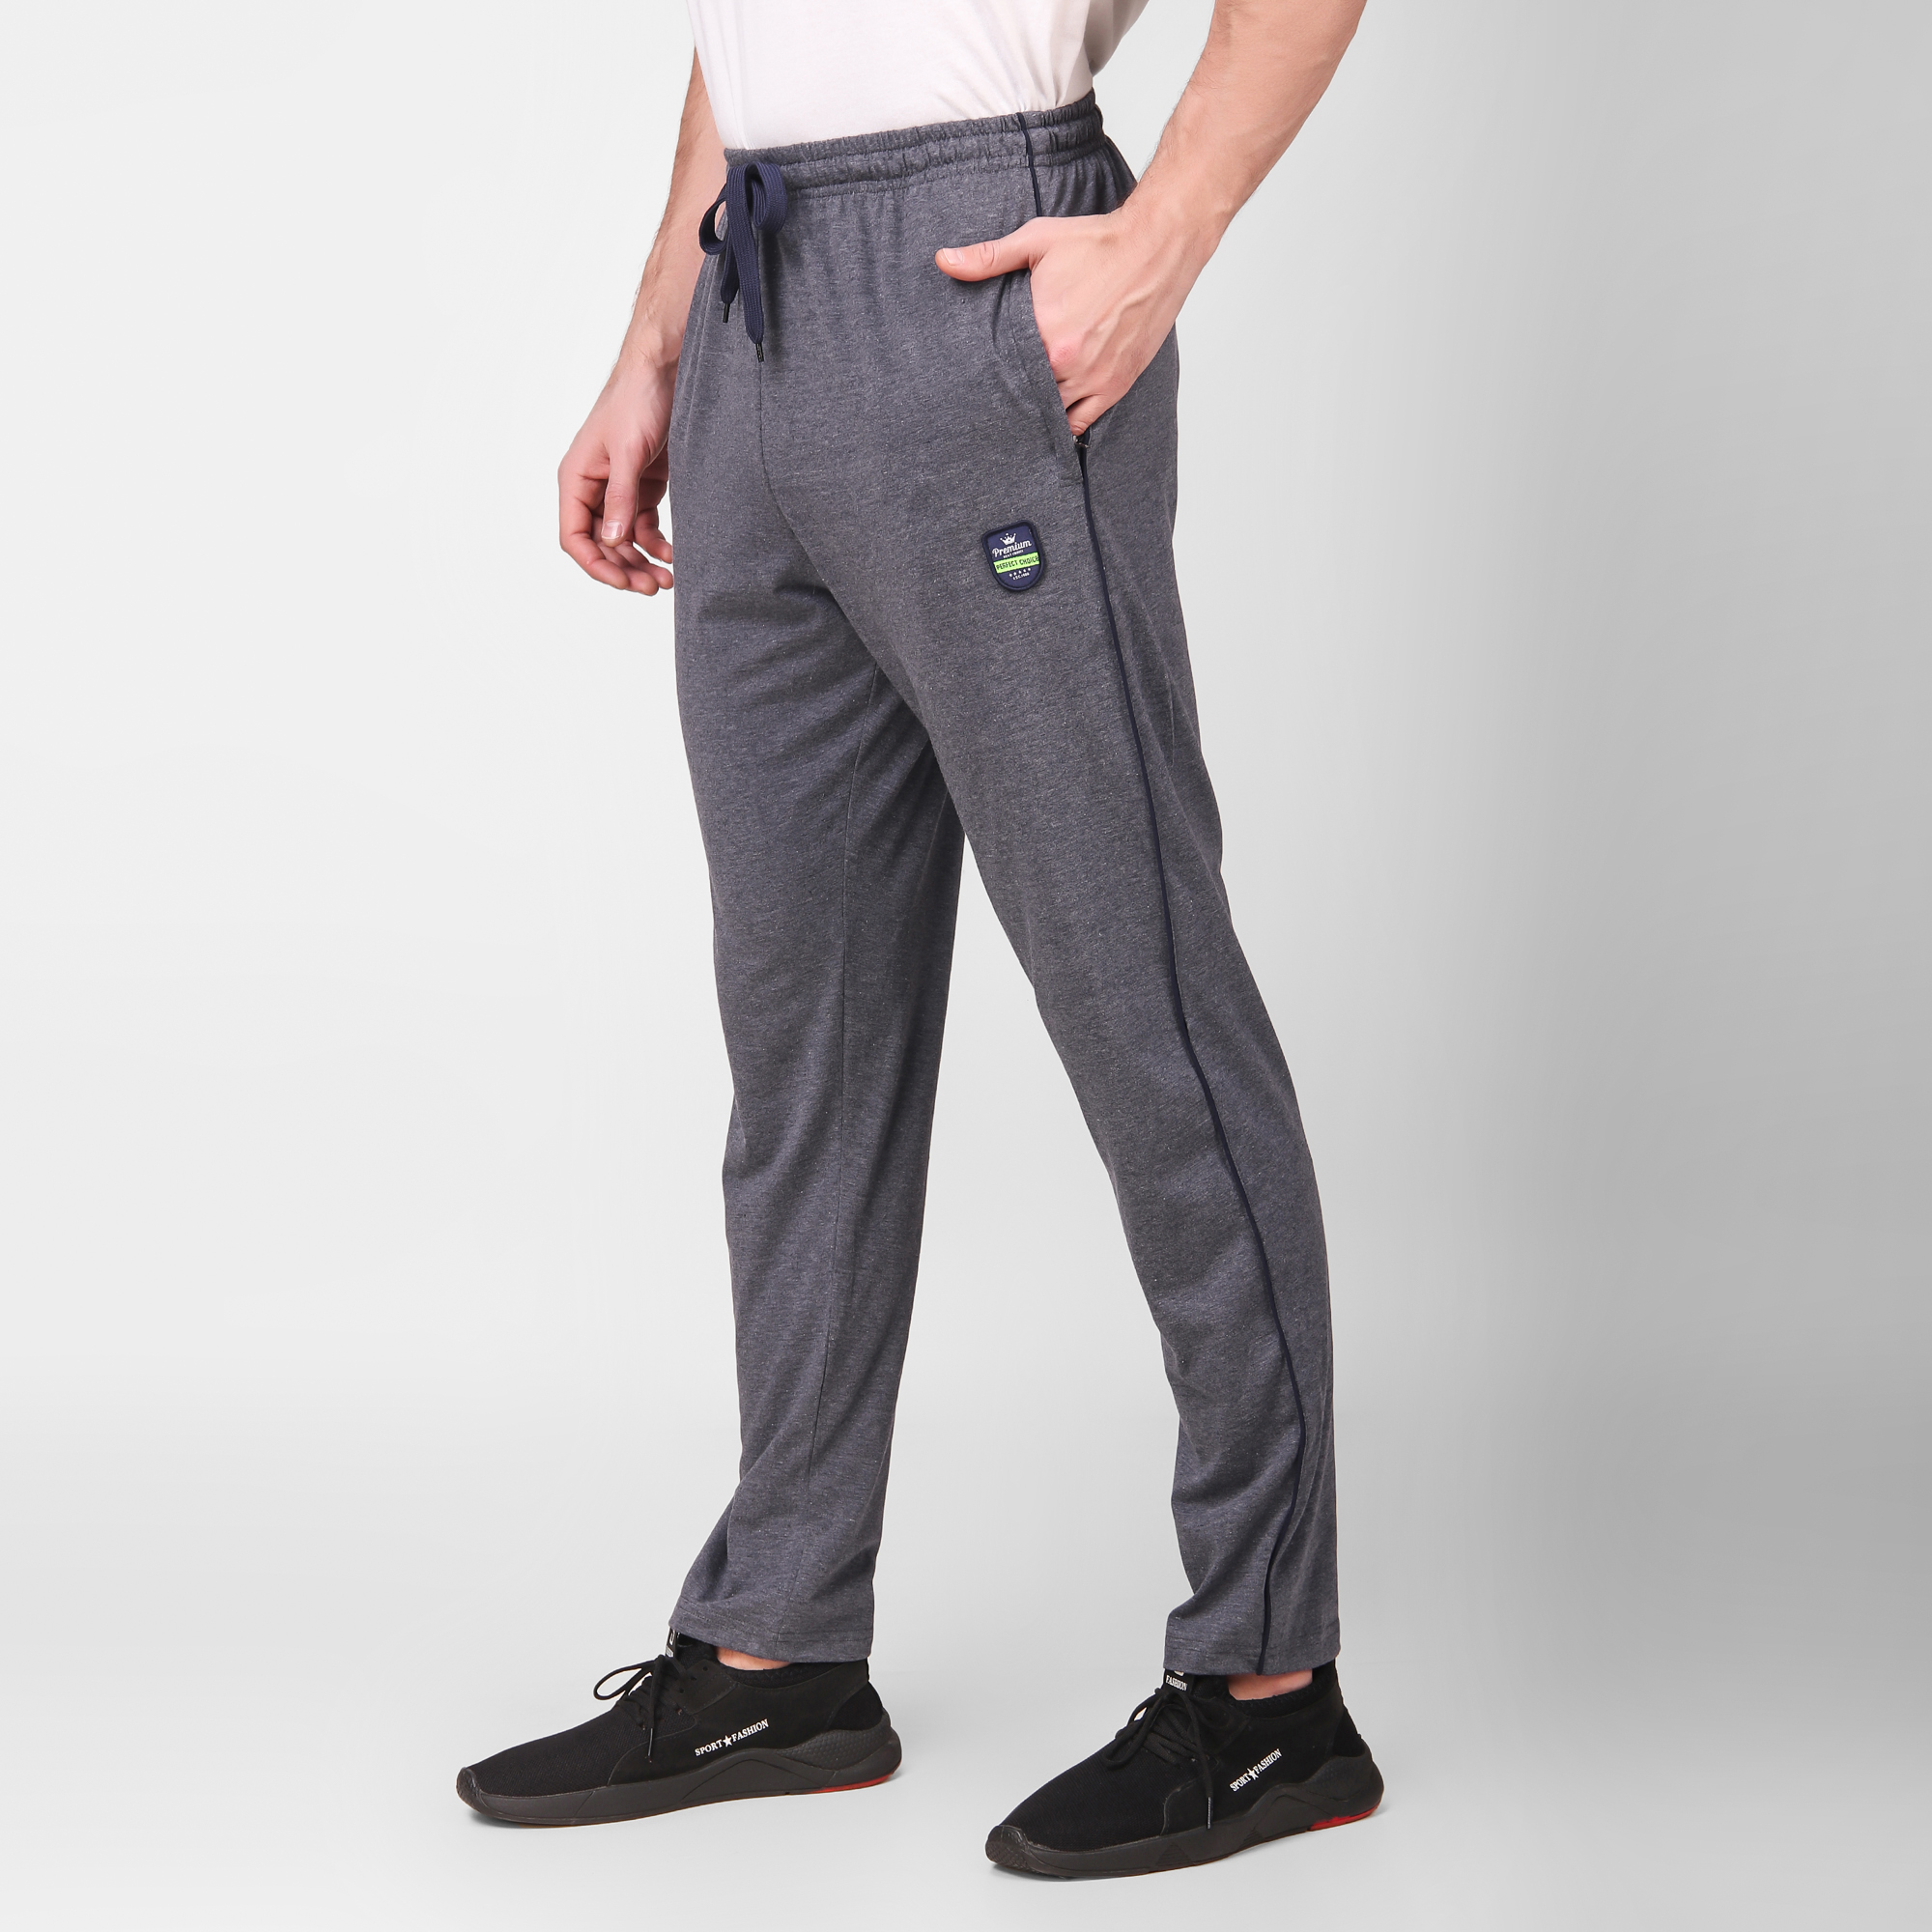 Cotton Track Pants for Men's (Light Blue)